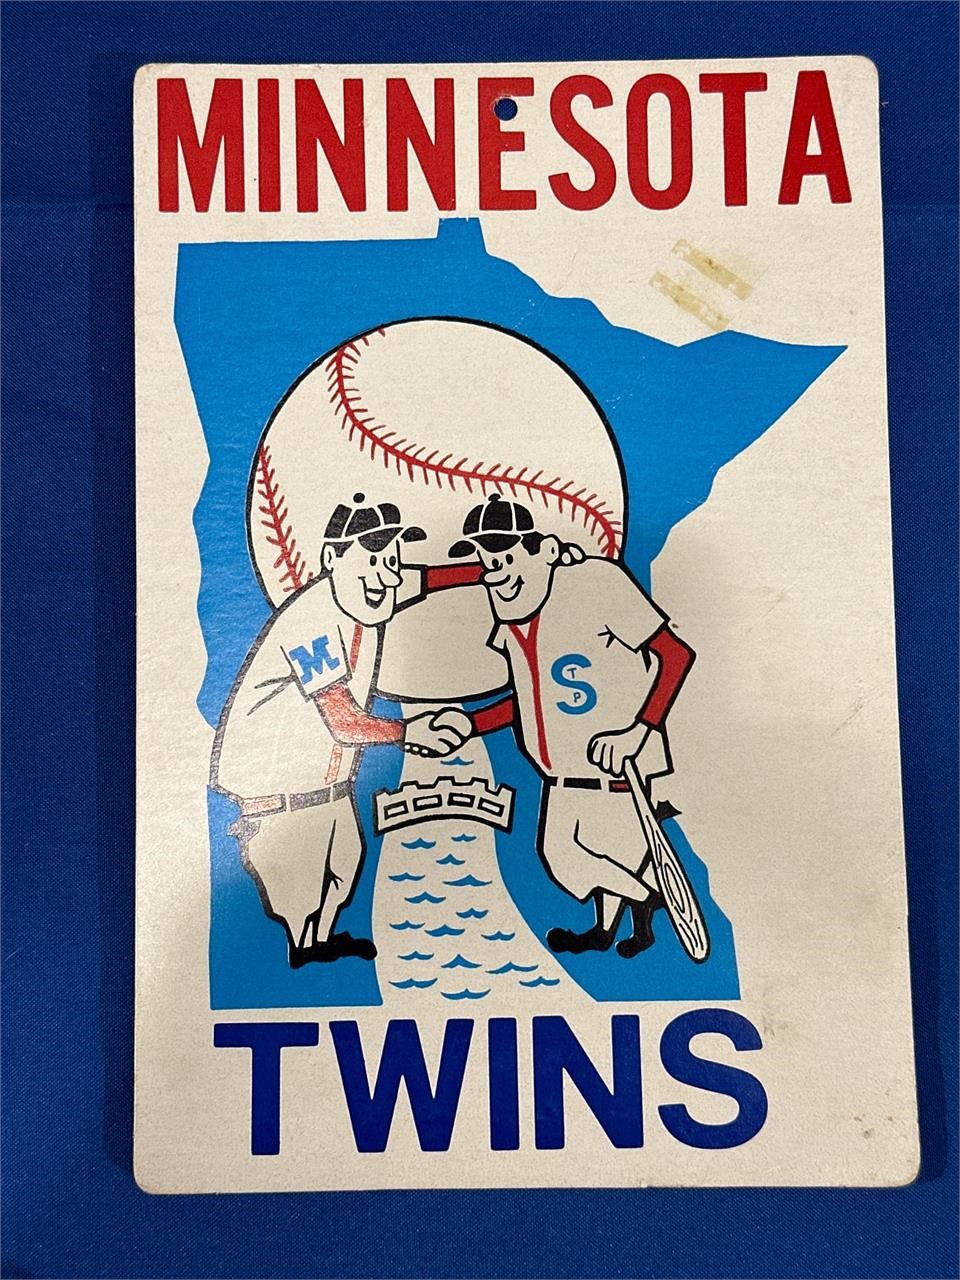 Vintage Twins sign